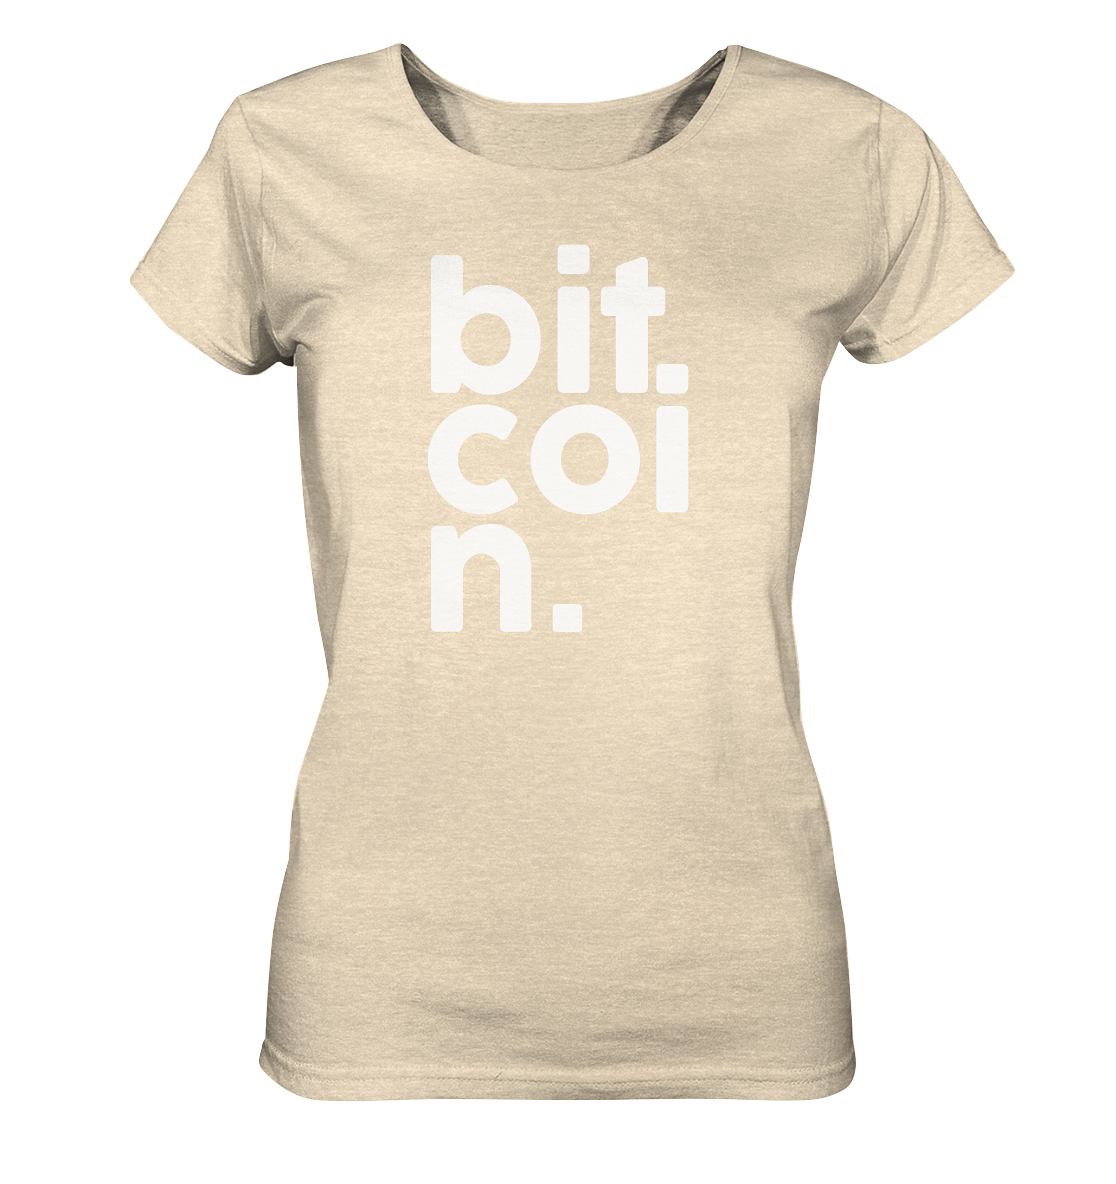 Bitcoin "bit coi n"  - Ladies Organic Shirt